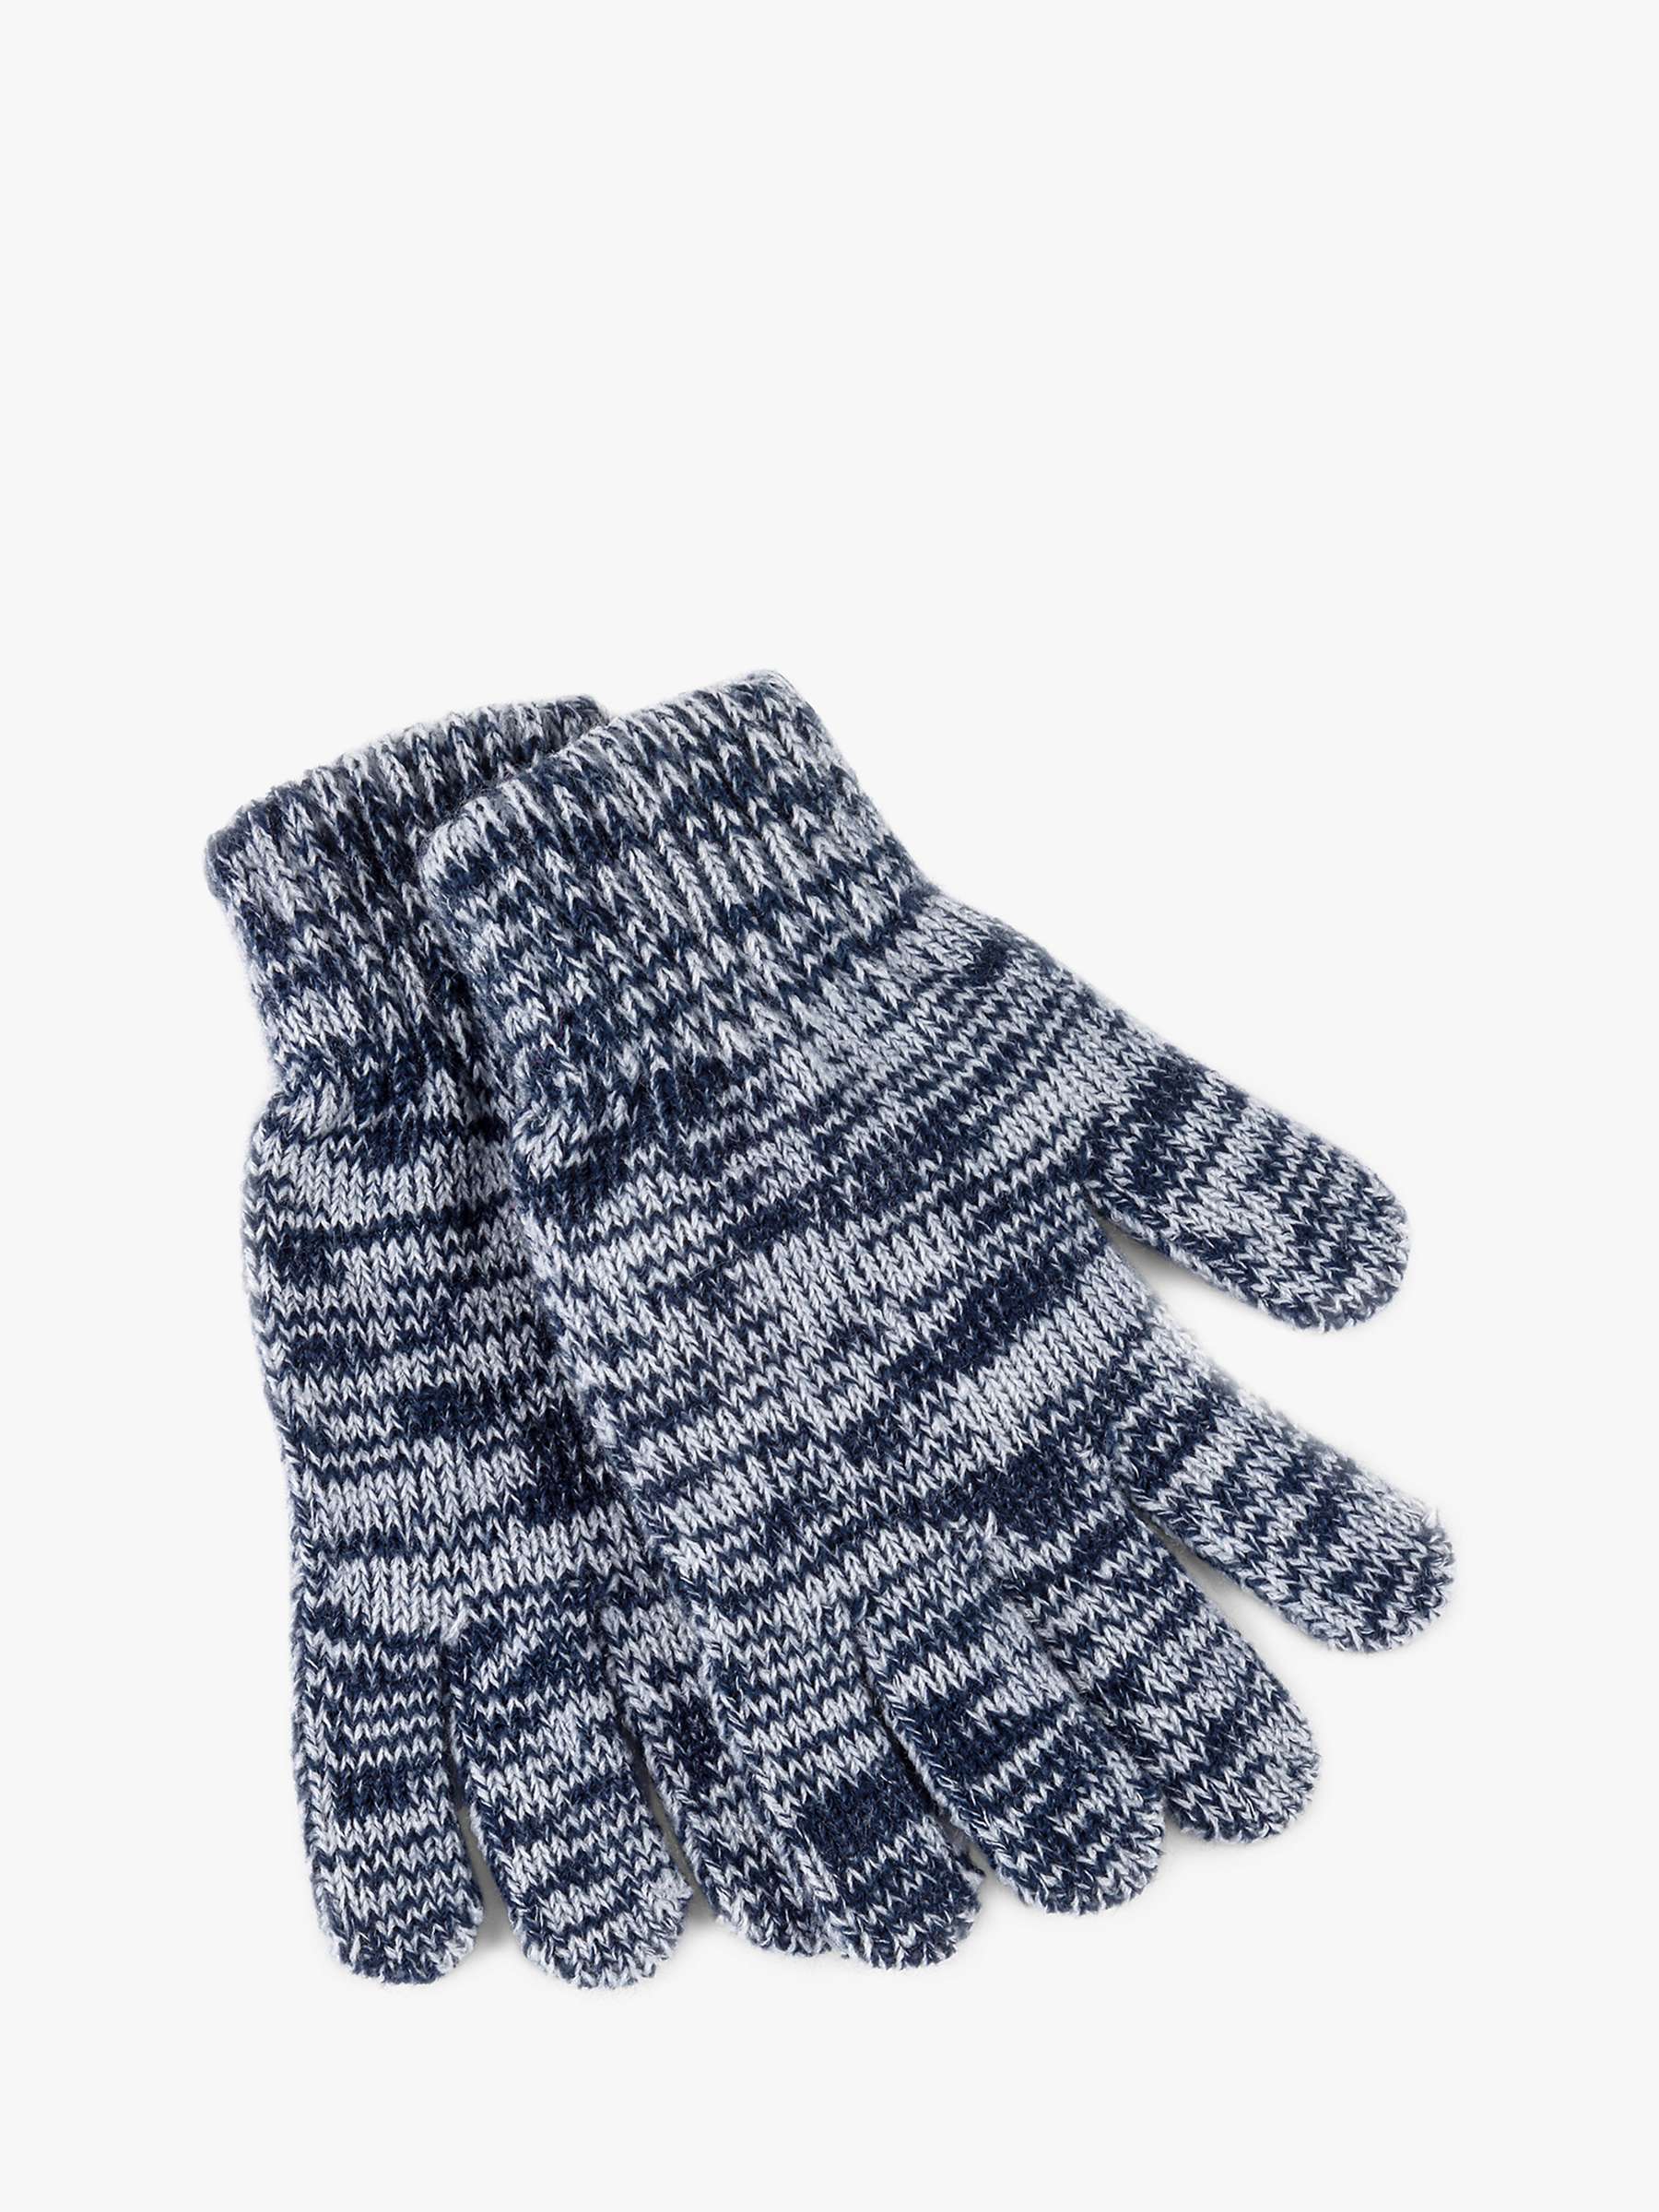 Buy totes Kids' Hat, Gloves & Snood Gift Set Online at johnlewis.com